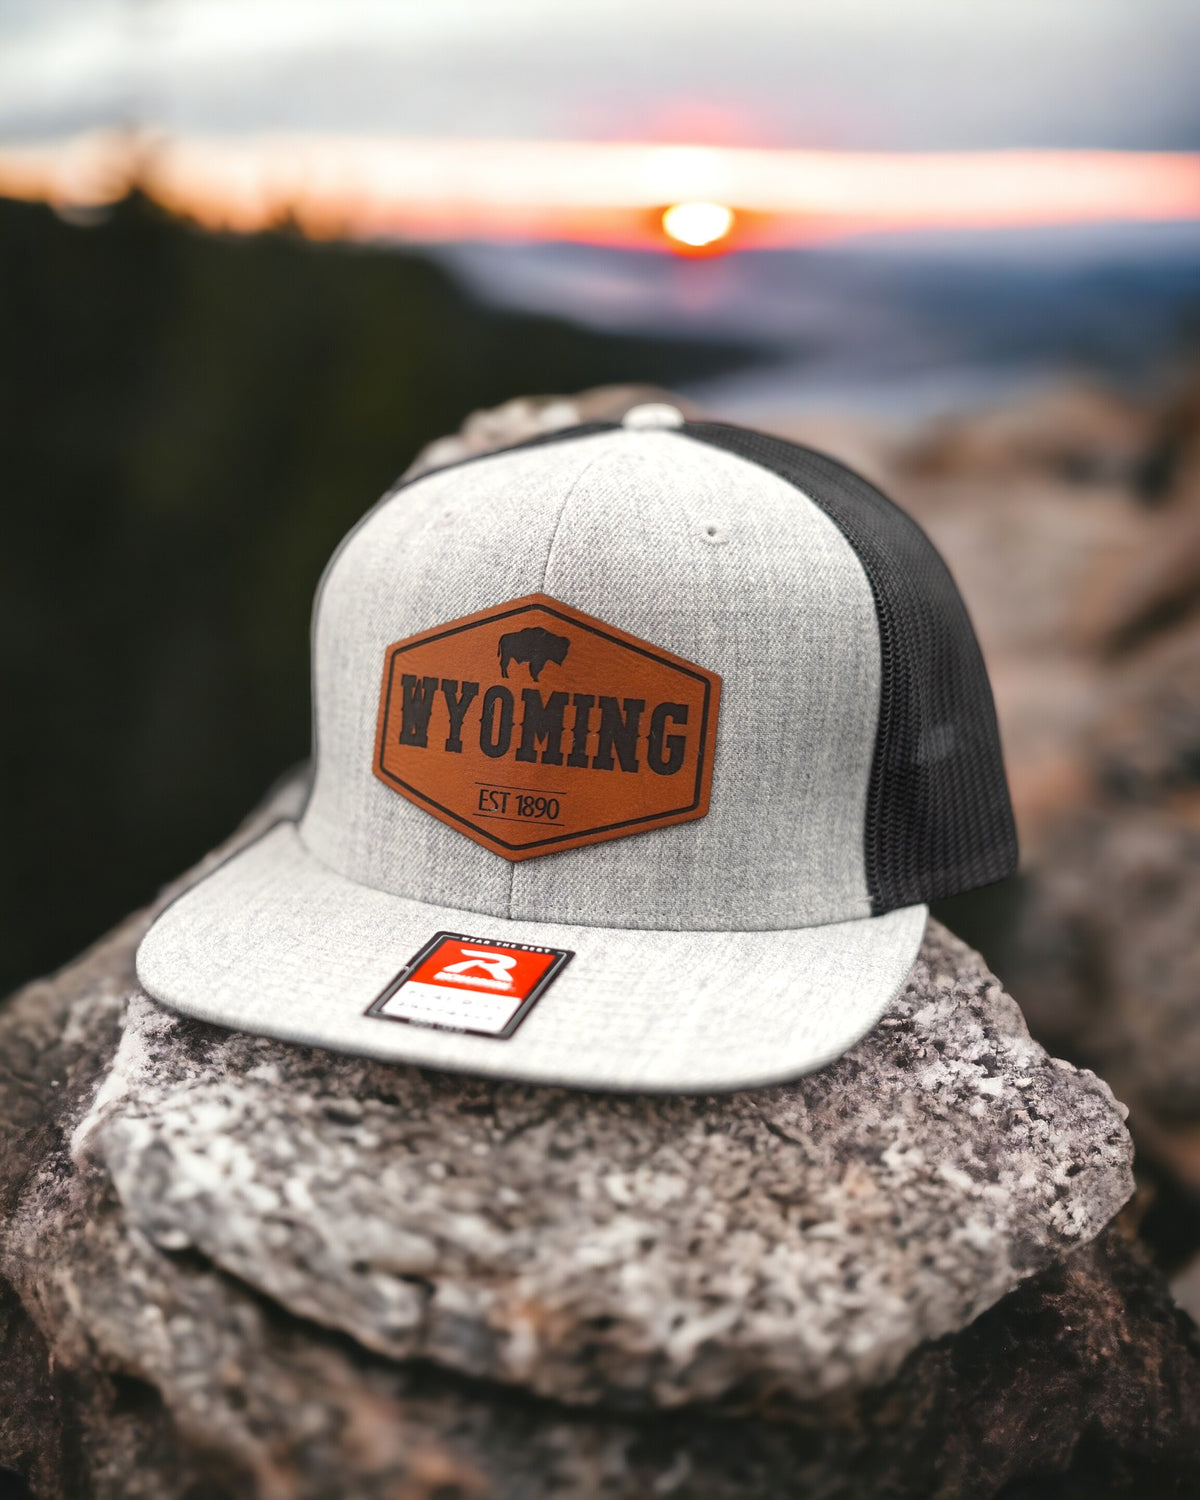 Wyoming Est 1890 Hat